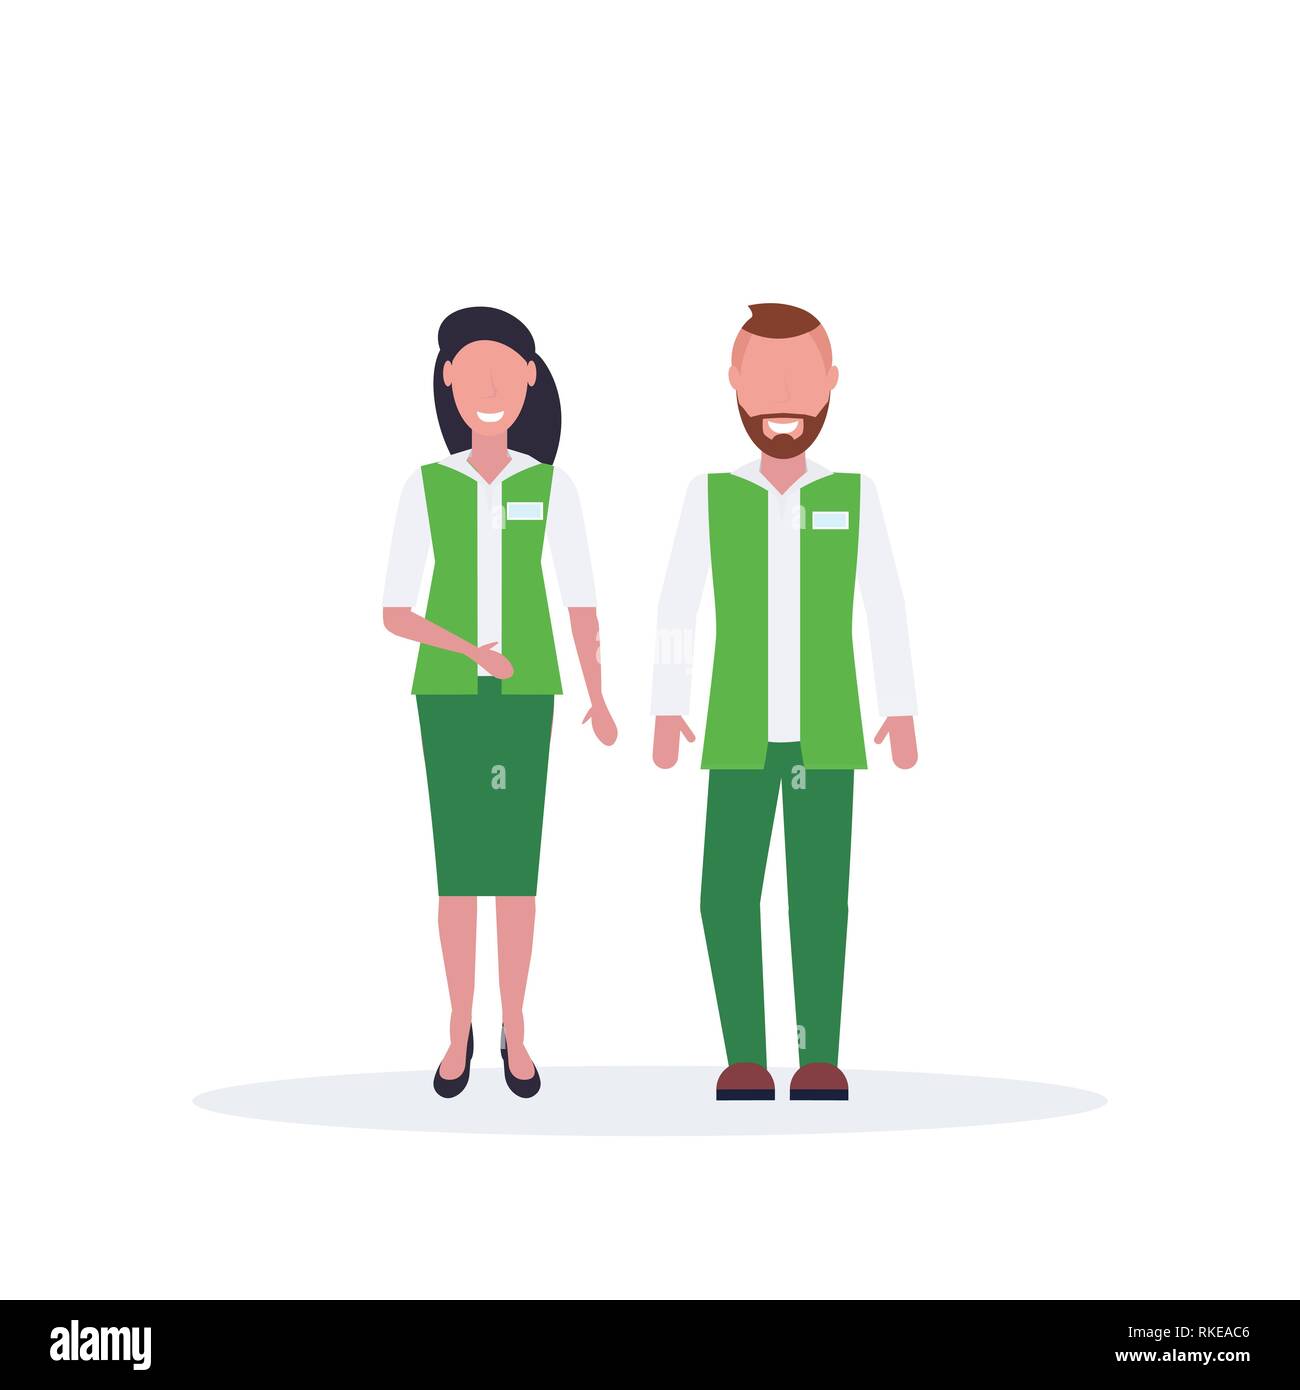 Paar Mann Frau Supermarkt Mitarbeiter gemeinsam Verkäufer und Verkäuferin in grüne Uniform glücklich männlich weiblich Zeichentrickfiguren in voller Länge Stock Vektor